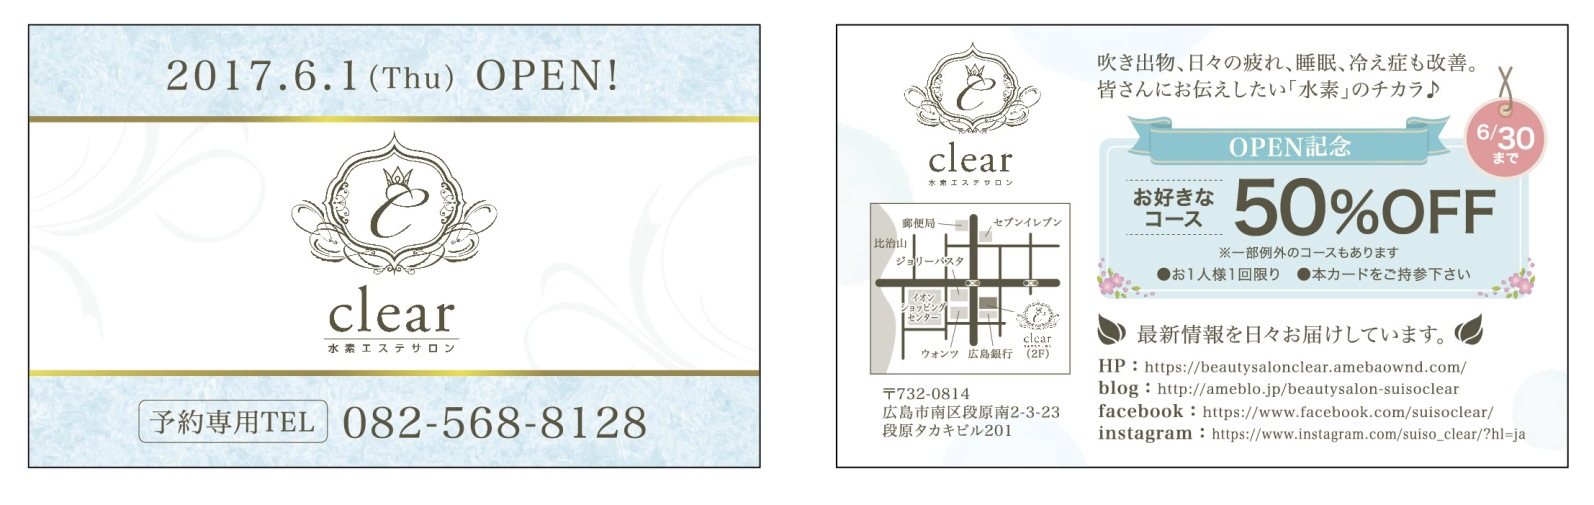 新規オープンする広島市東区エステサロンのおしゃれなオリジナルショップカードのデザイン制作実績